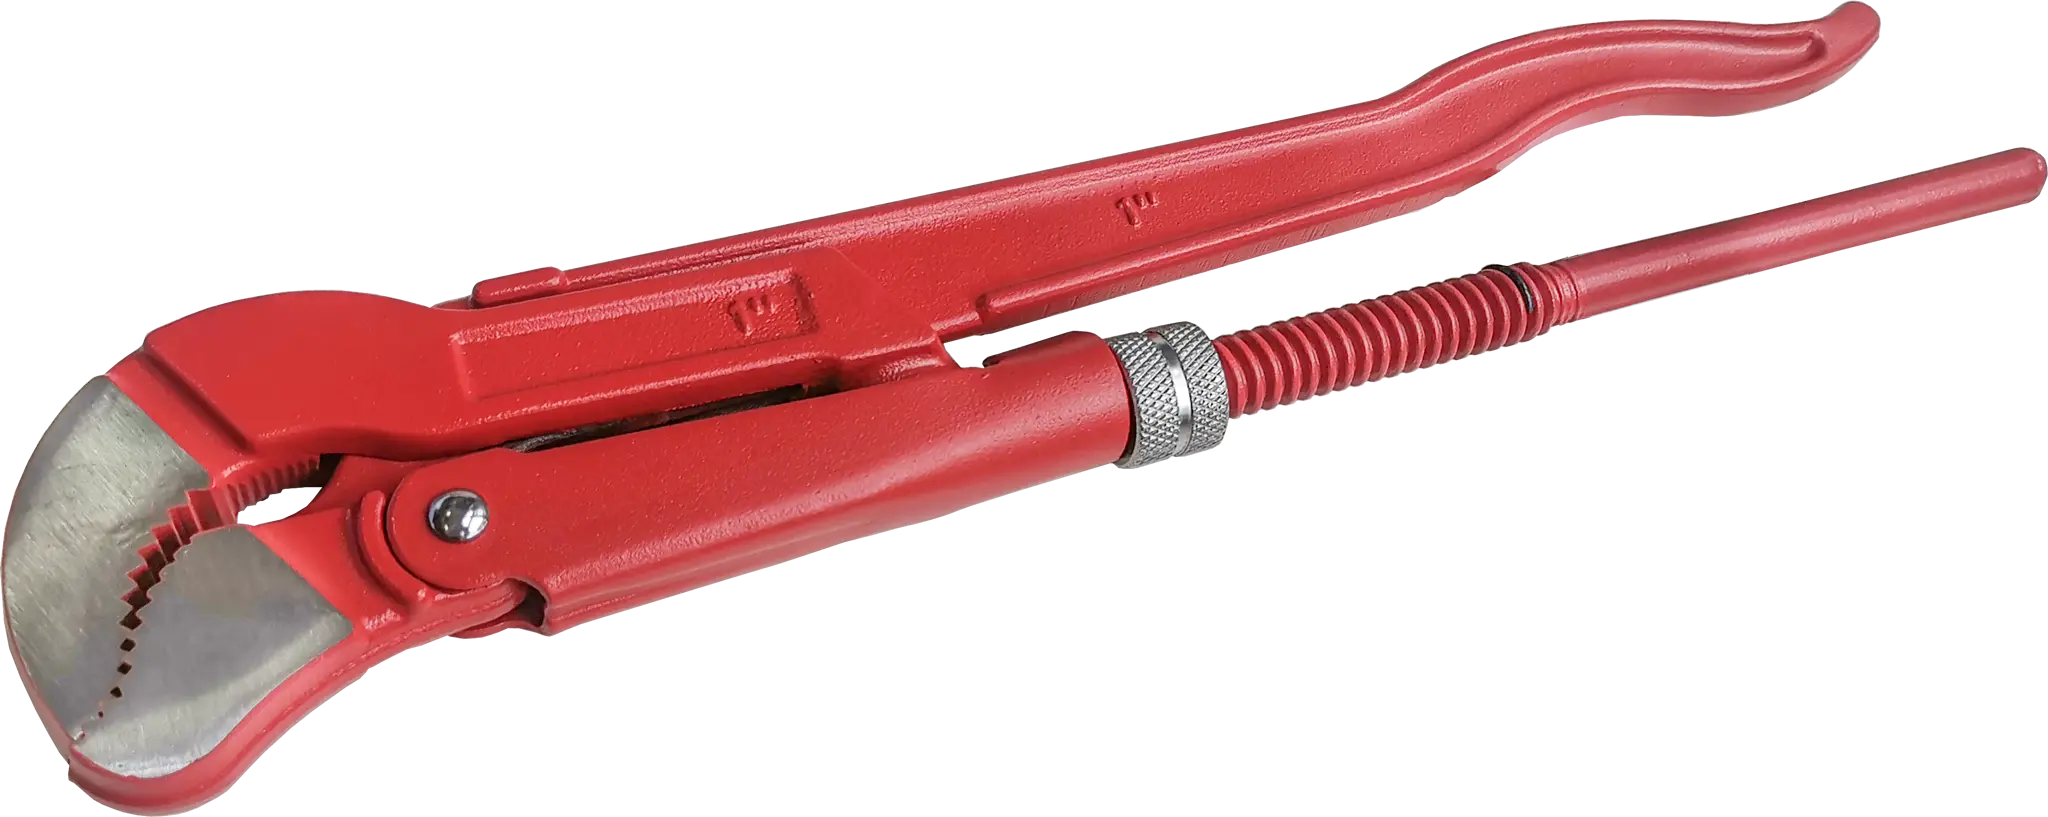 Ключ трубный газовый рычажный S 1045.0254 захват 25 мм, длина 320 мм ключ трубный garwin industrial 604270 128 цепной усиленный 1280 мм